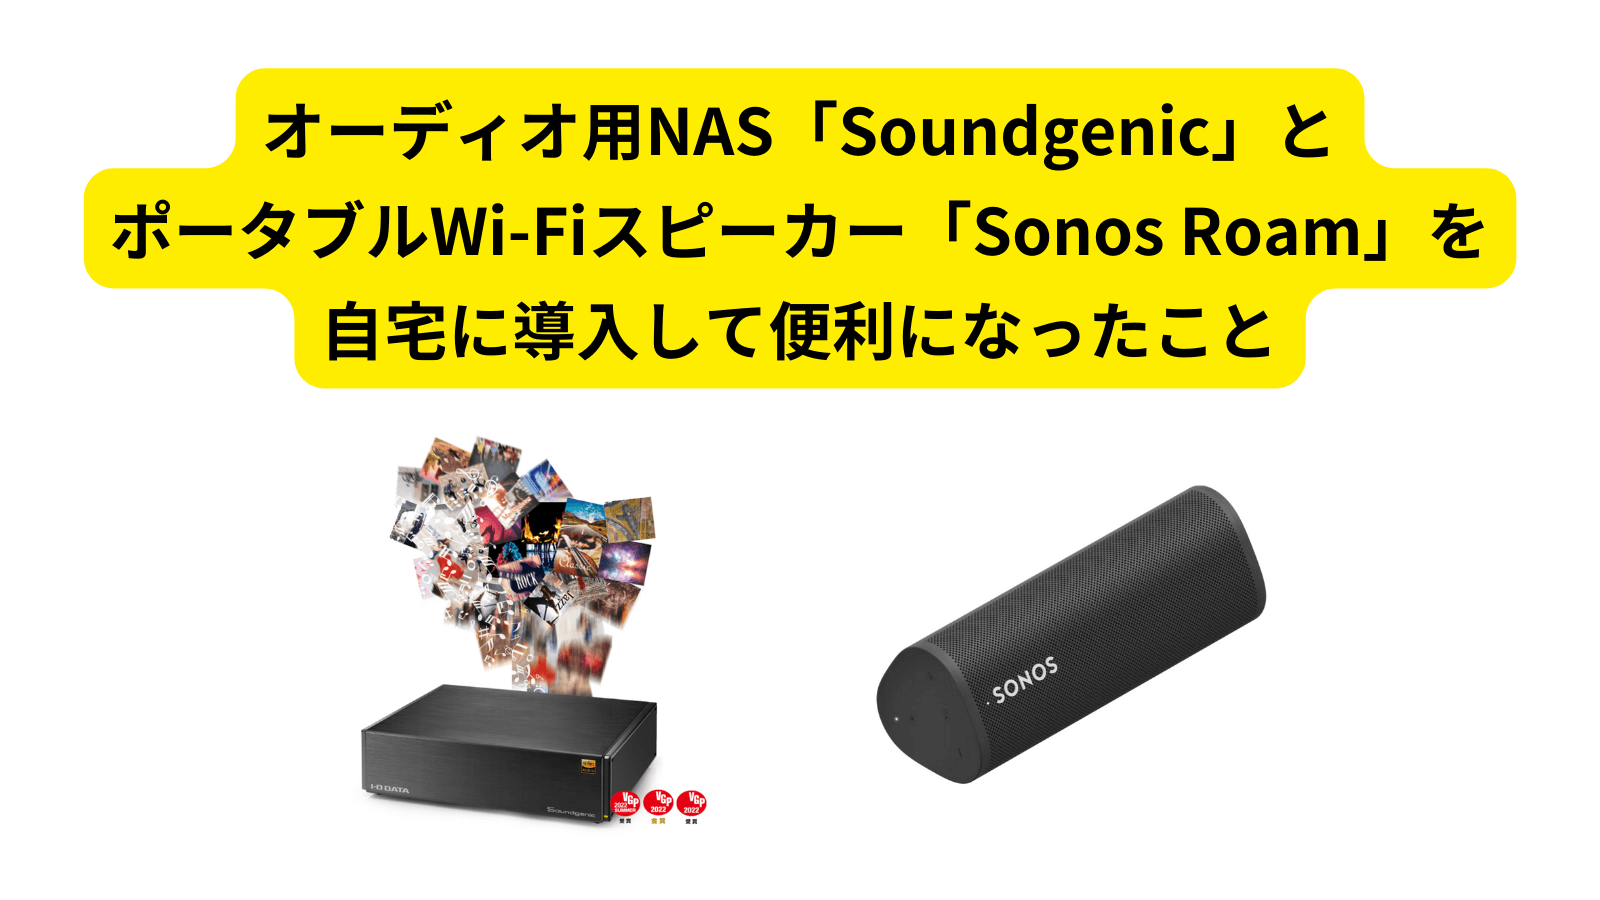 オーディオ用NAS「Soundgenic」とポータブルWi-Fiスピーカー「Sonos Roam」を自宅に導入して便利になったこと US HIPHOPの日本盤CDカタログ